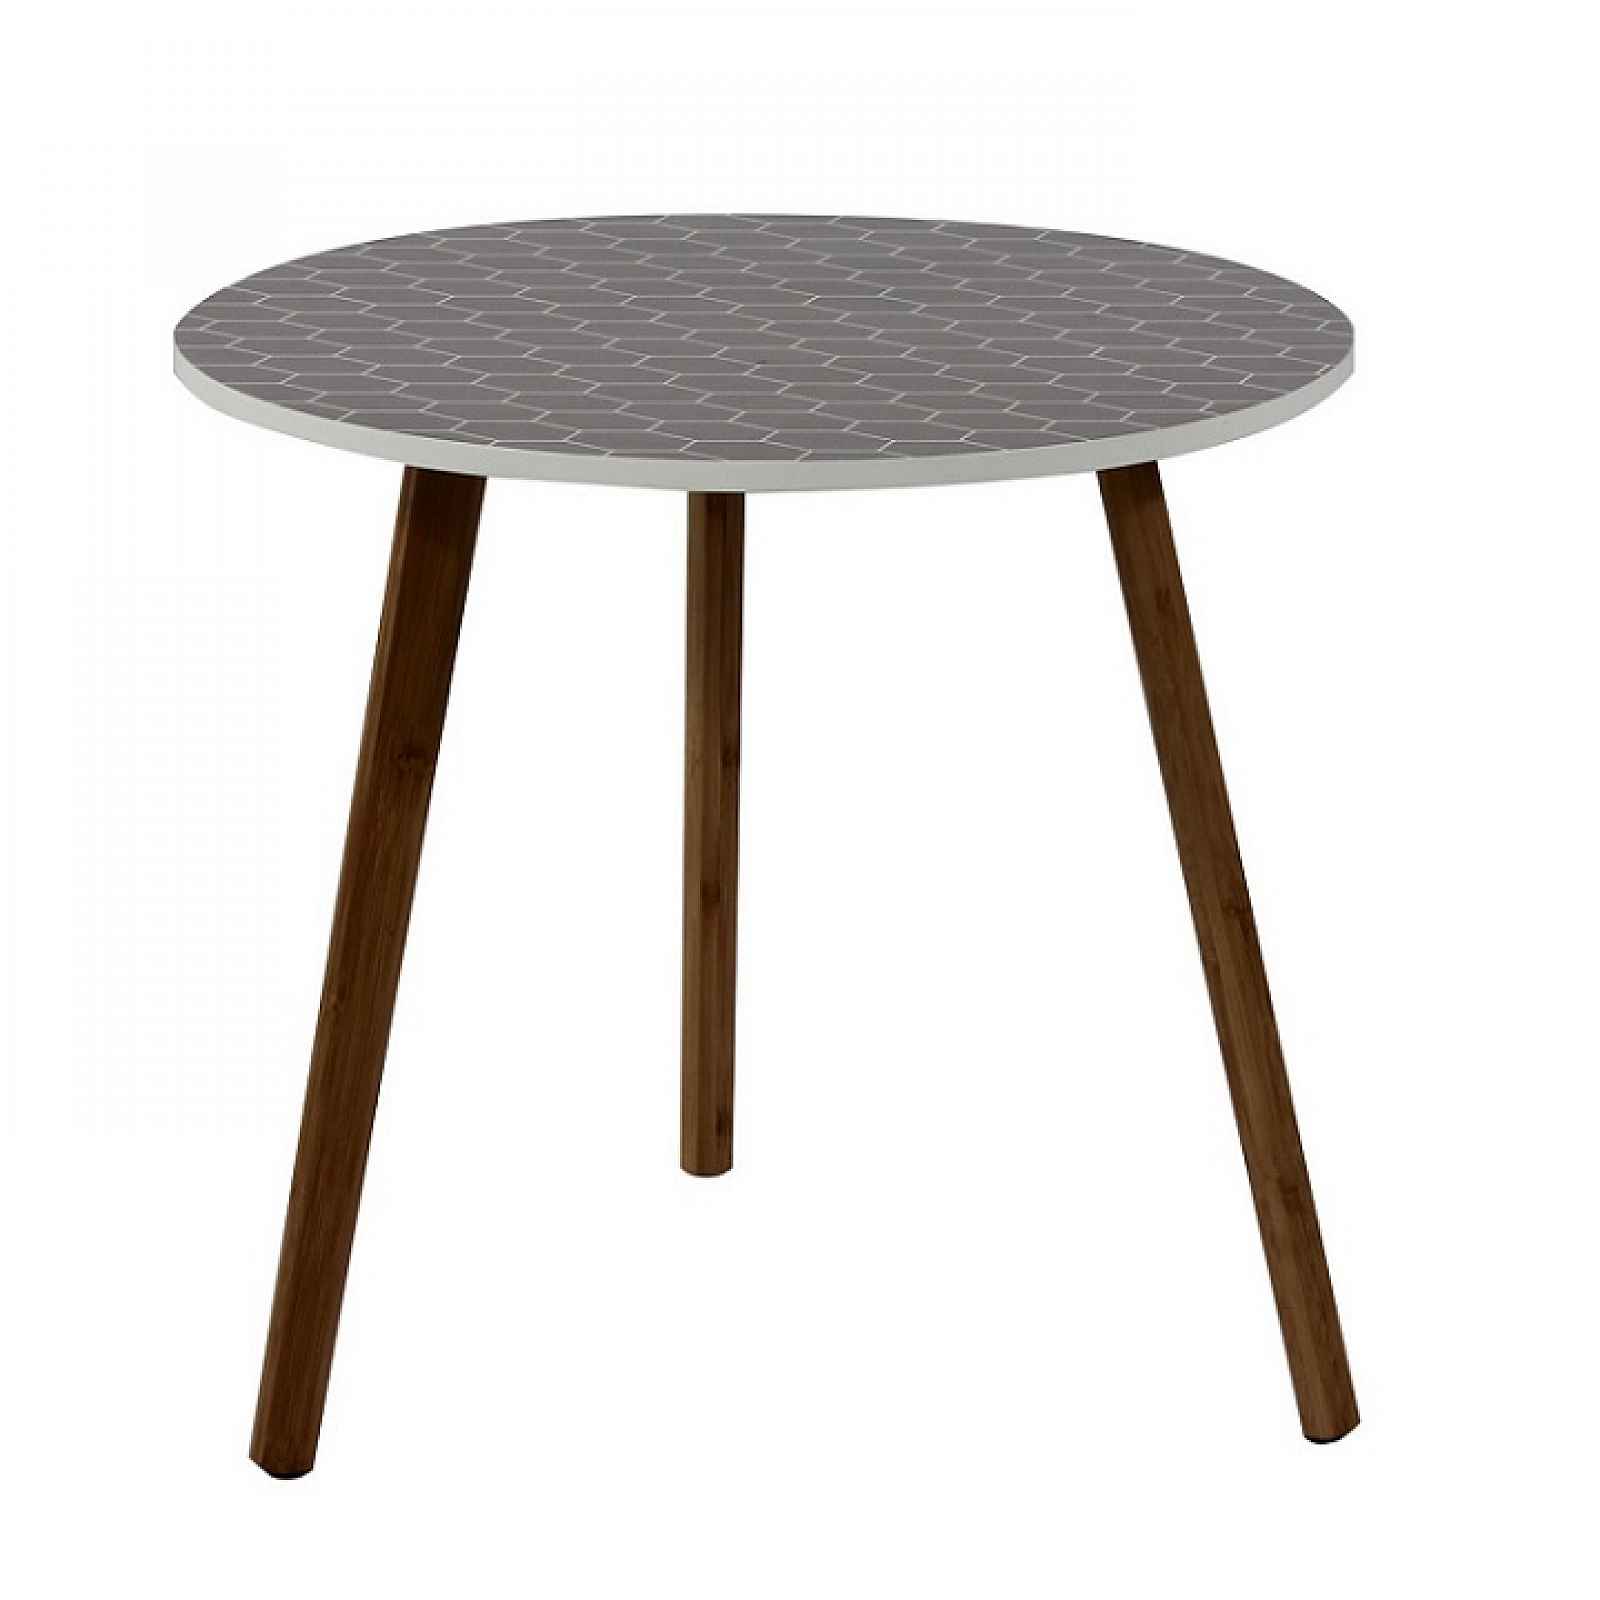 Příruční stolek, šedá/dřevo natural, HANSON